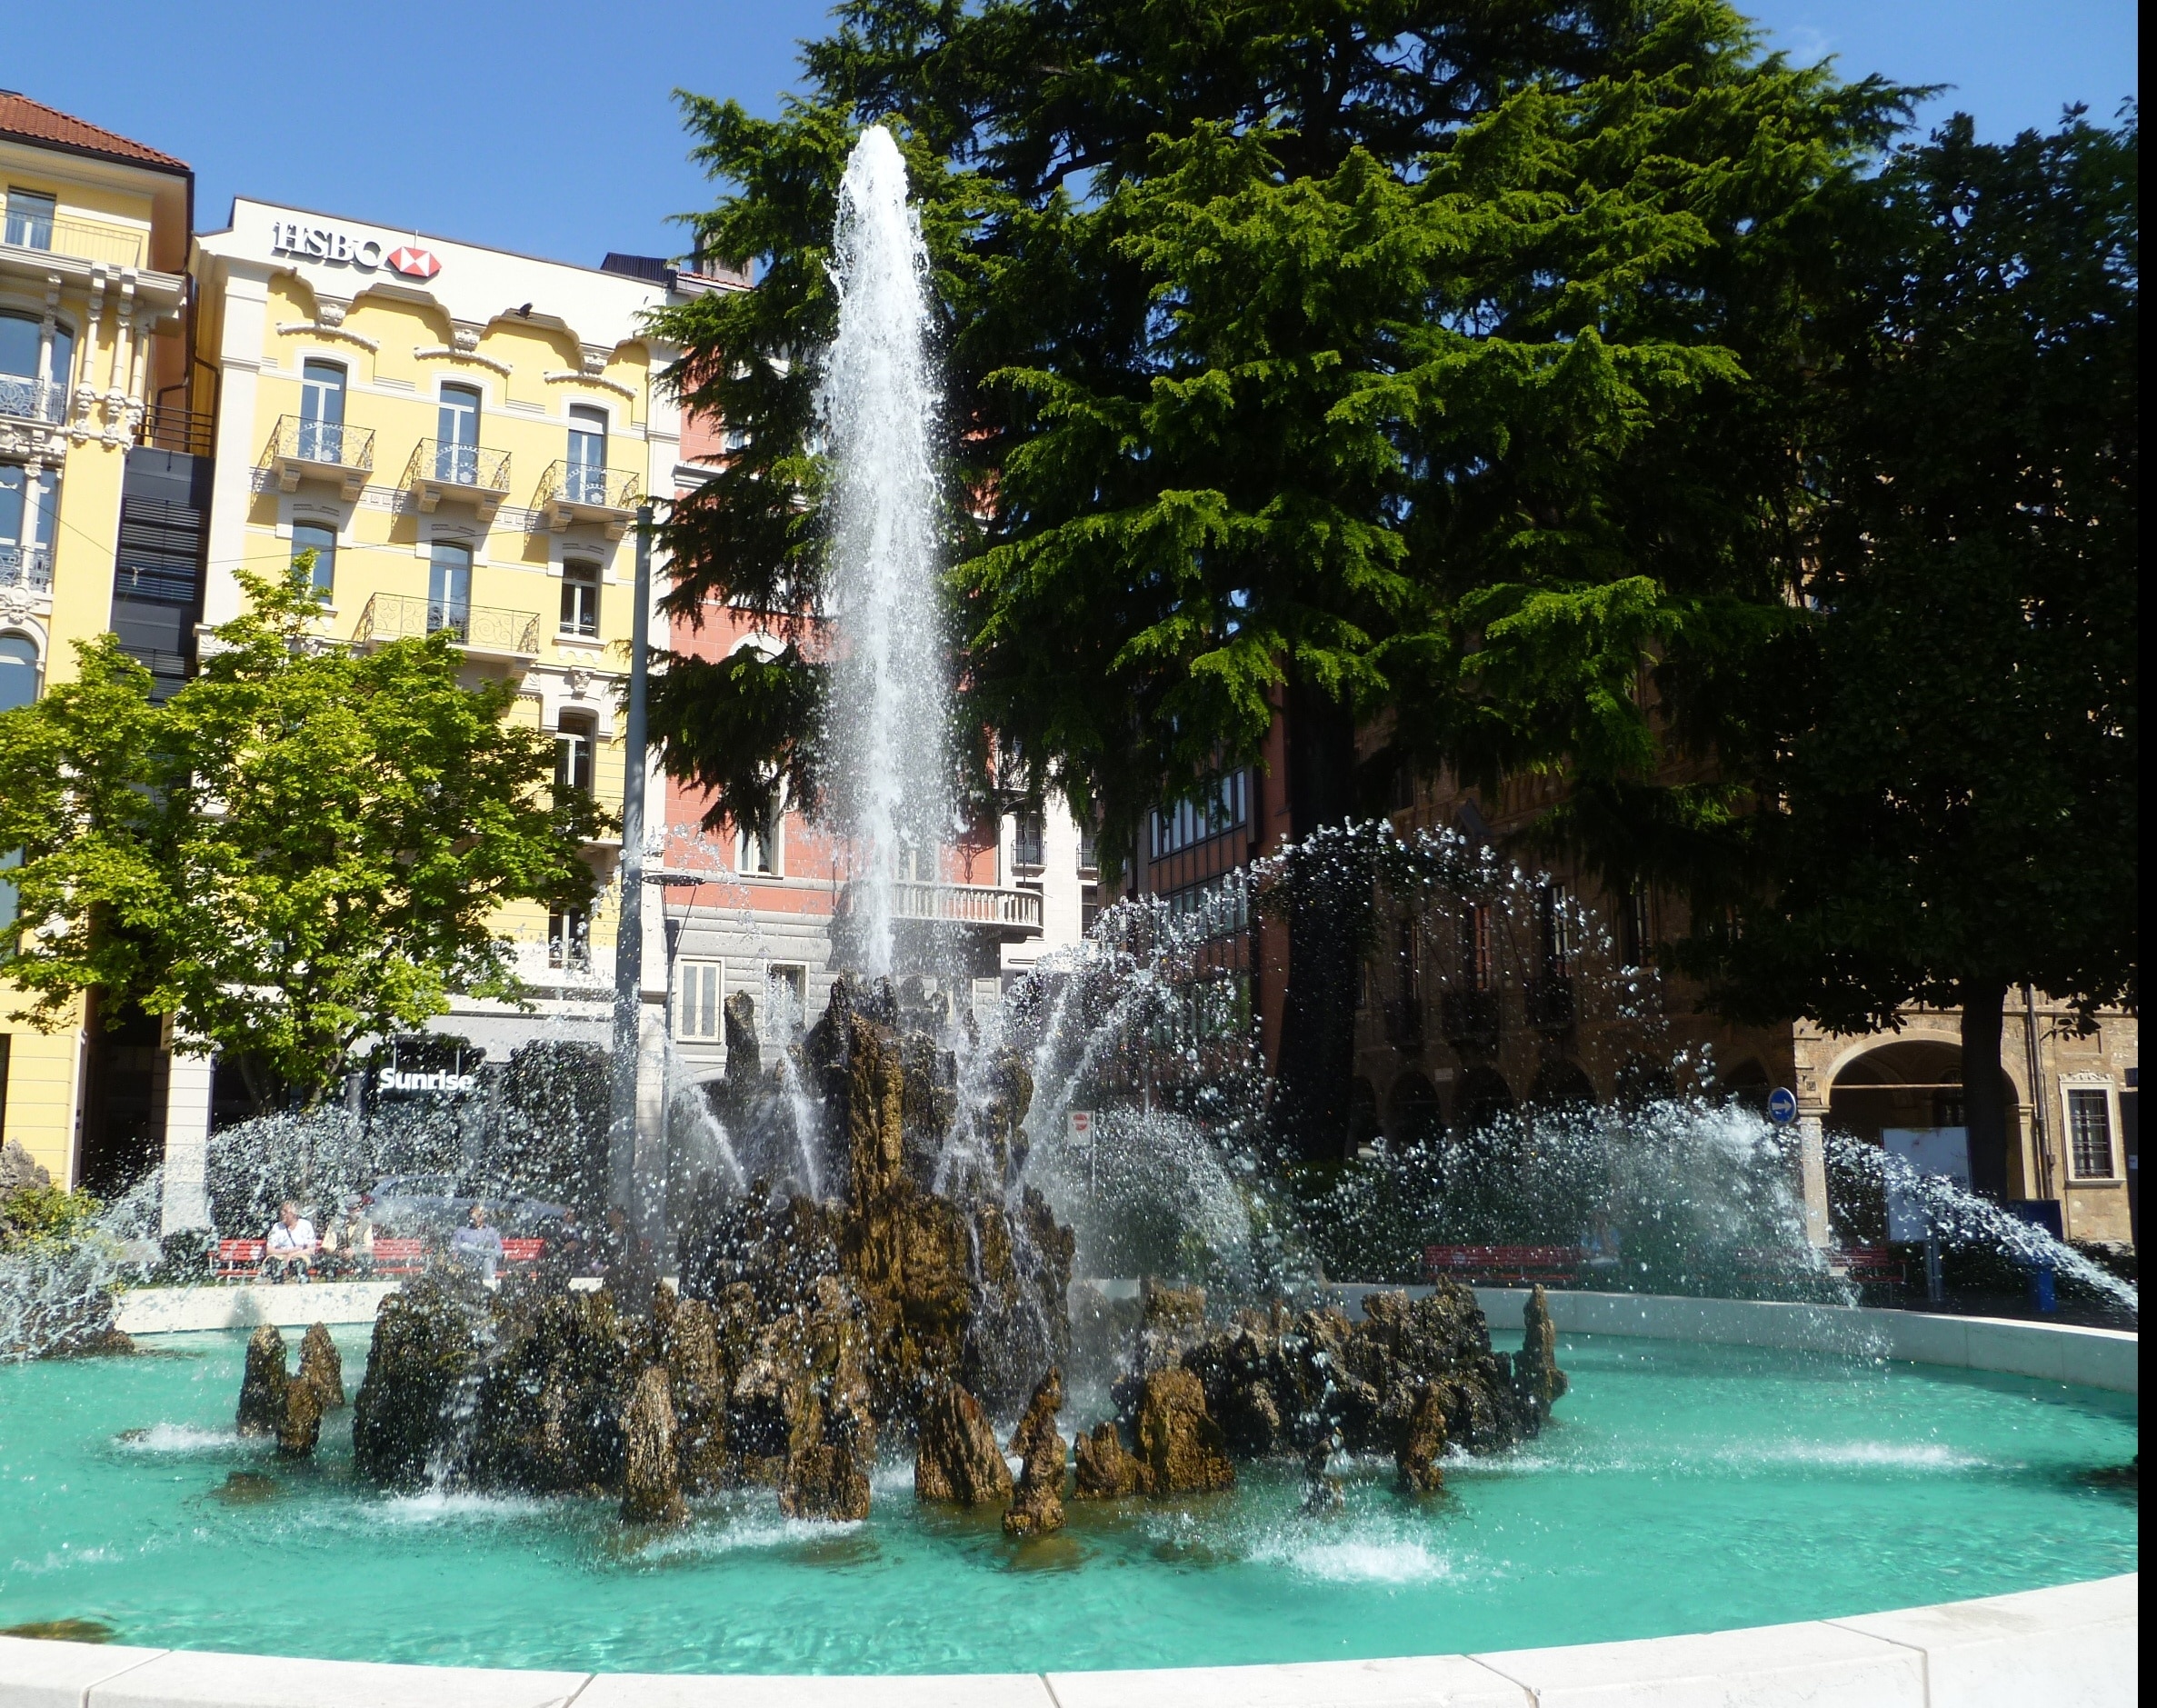 Fountain in Lugano, Switzerland